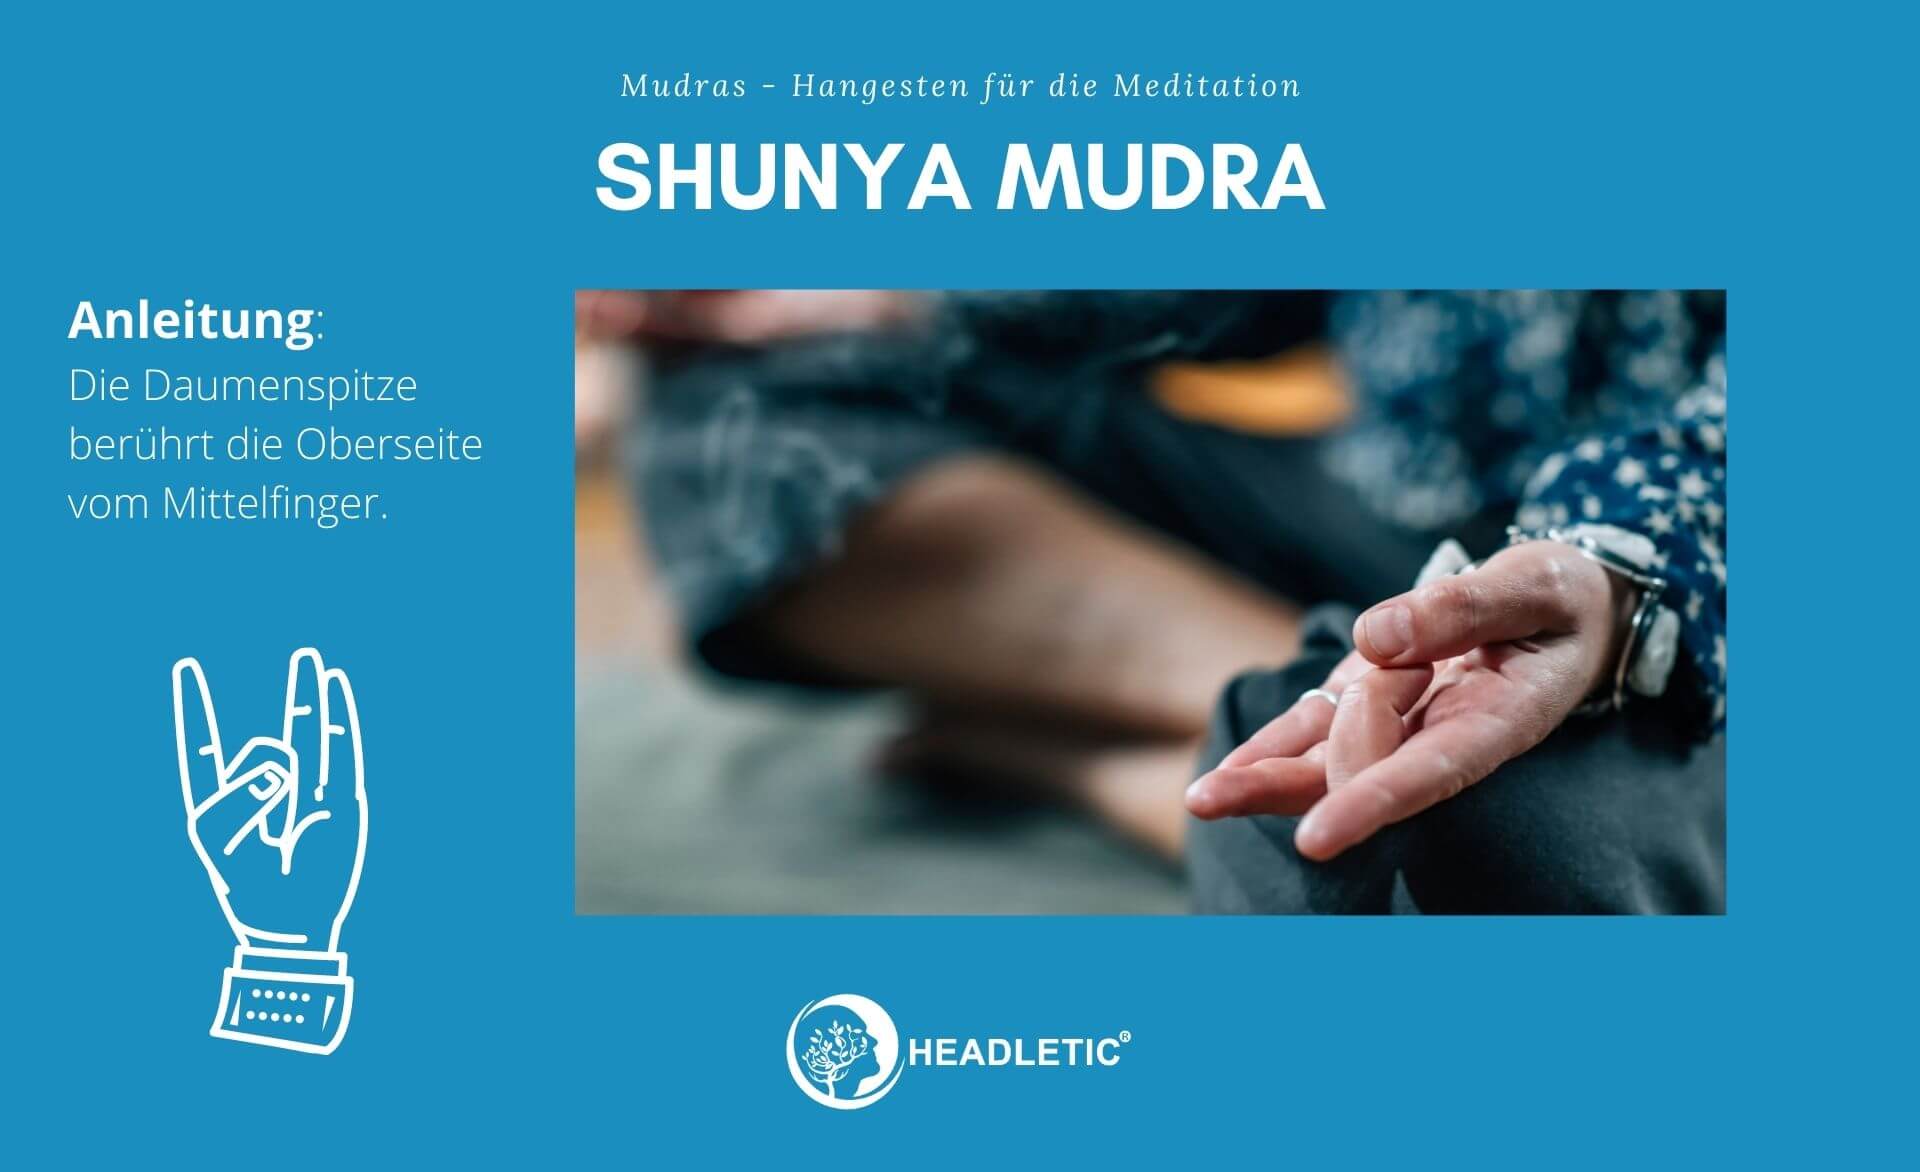 Shunya Mudra - Handgesten für die Meditation